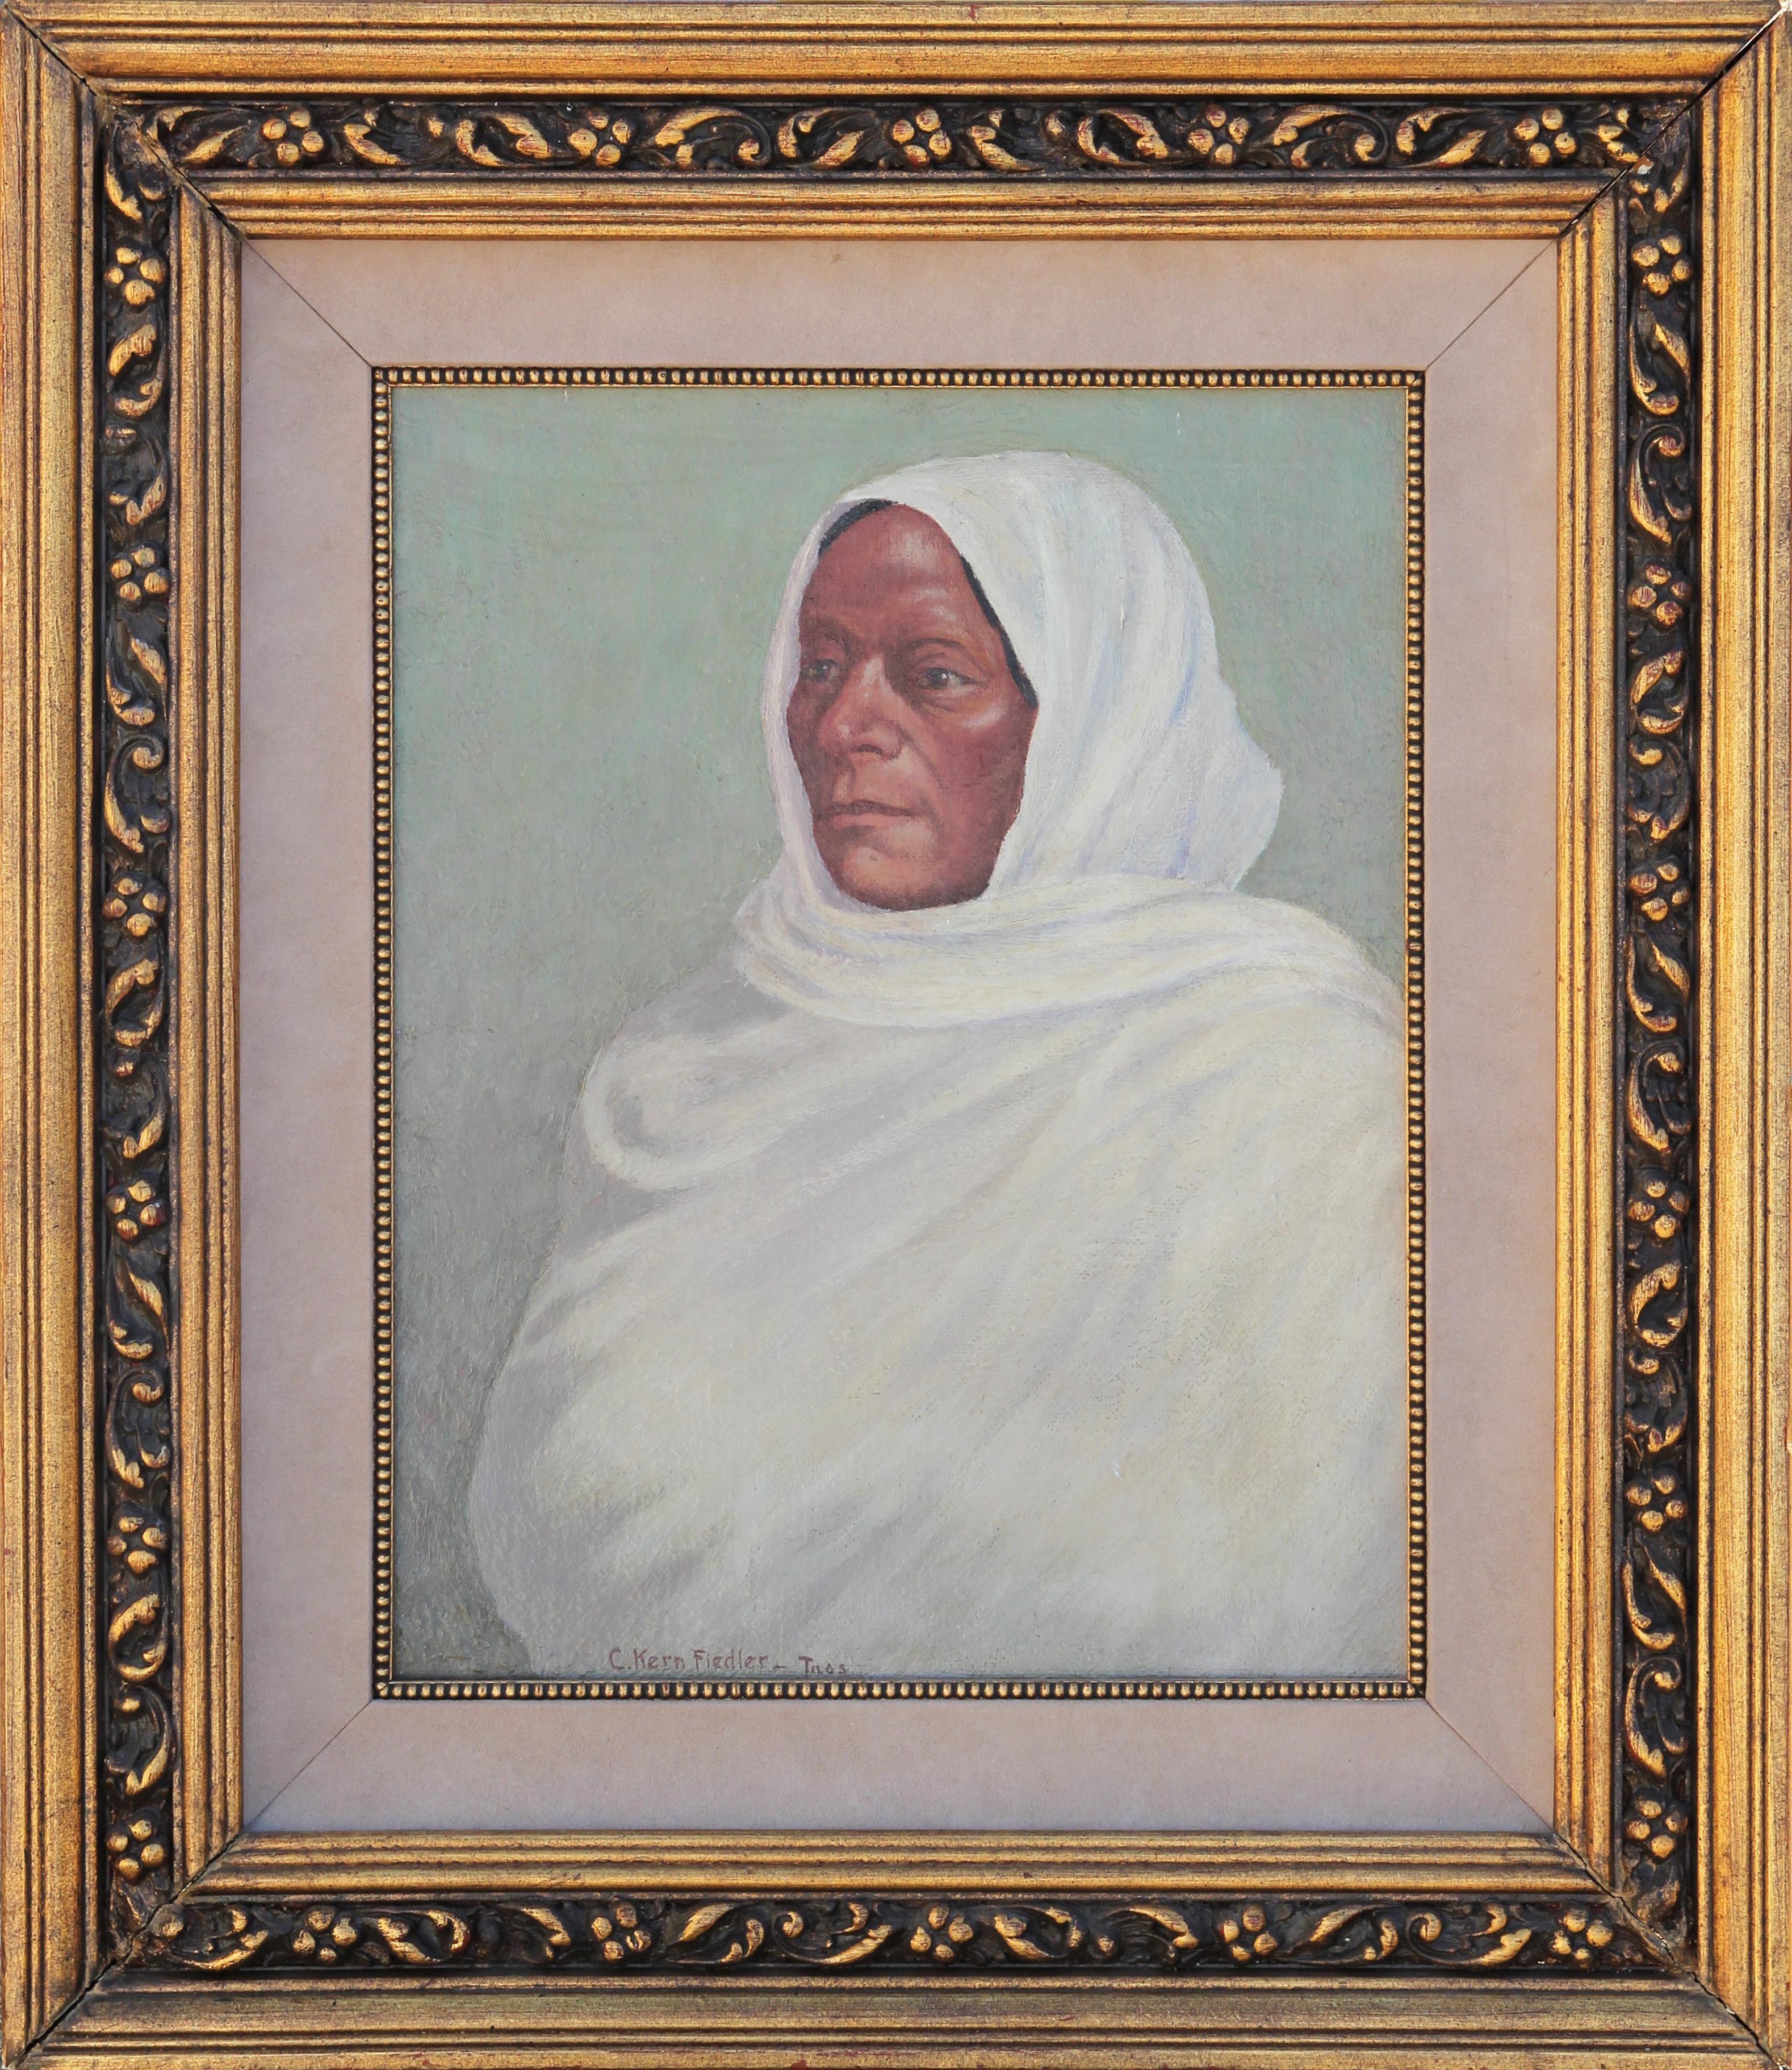 Portrait Painting Charles Kern Fiedler - Portrait réaliste de femme Tao aux tons verts pastel dans un bandeau blanc